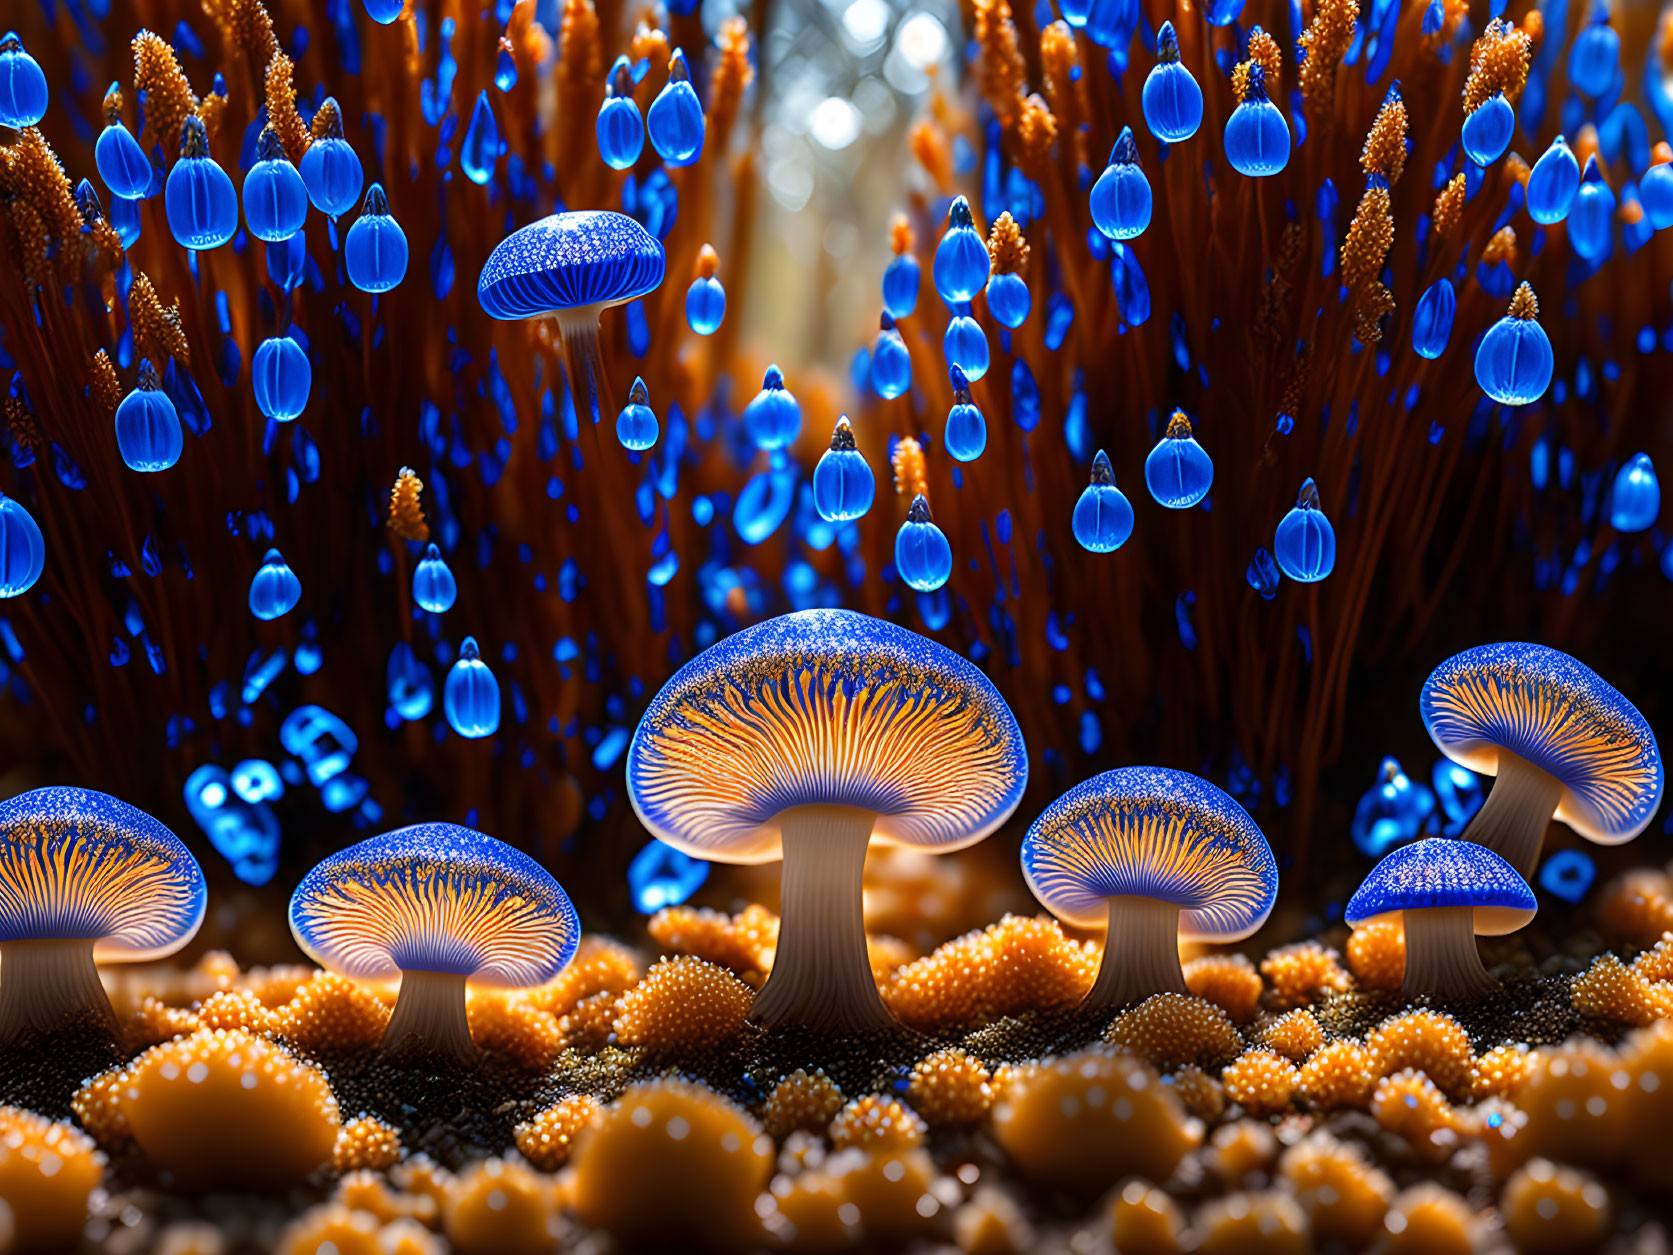 The sea of fungi